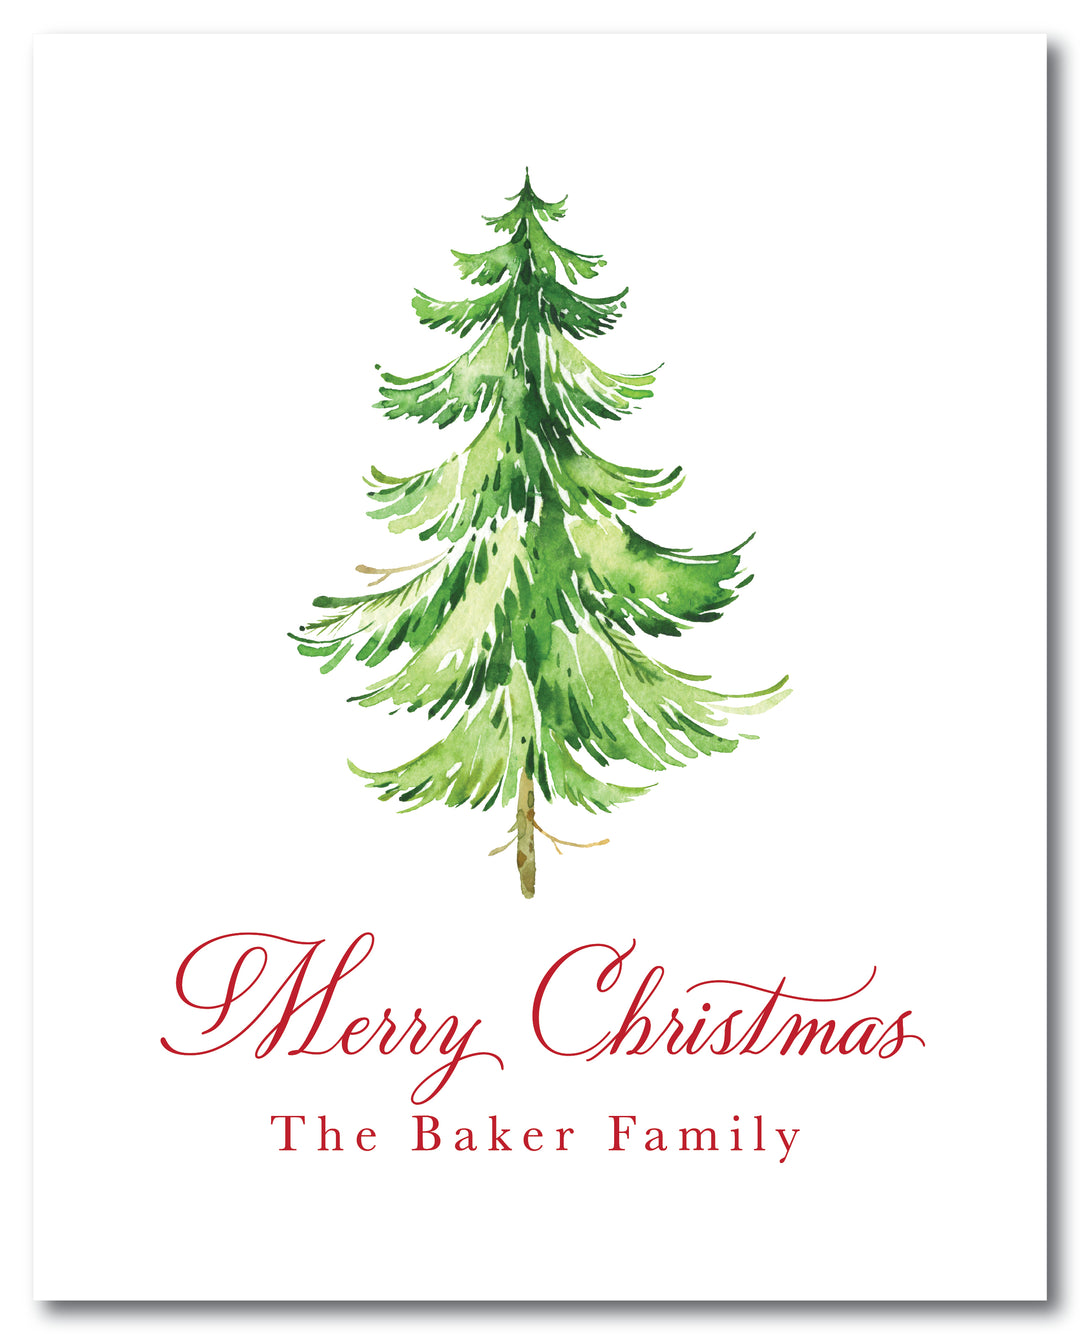 The Baker Family Christmas Sign